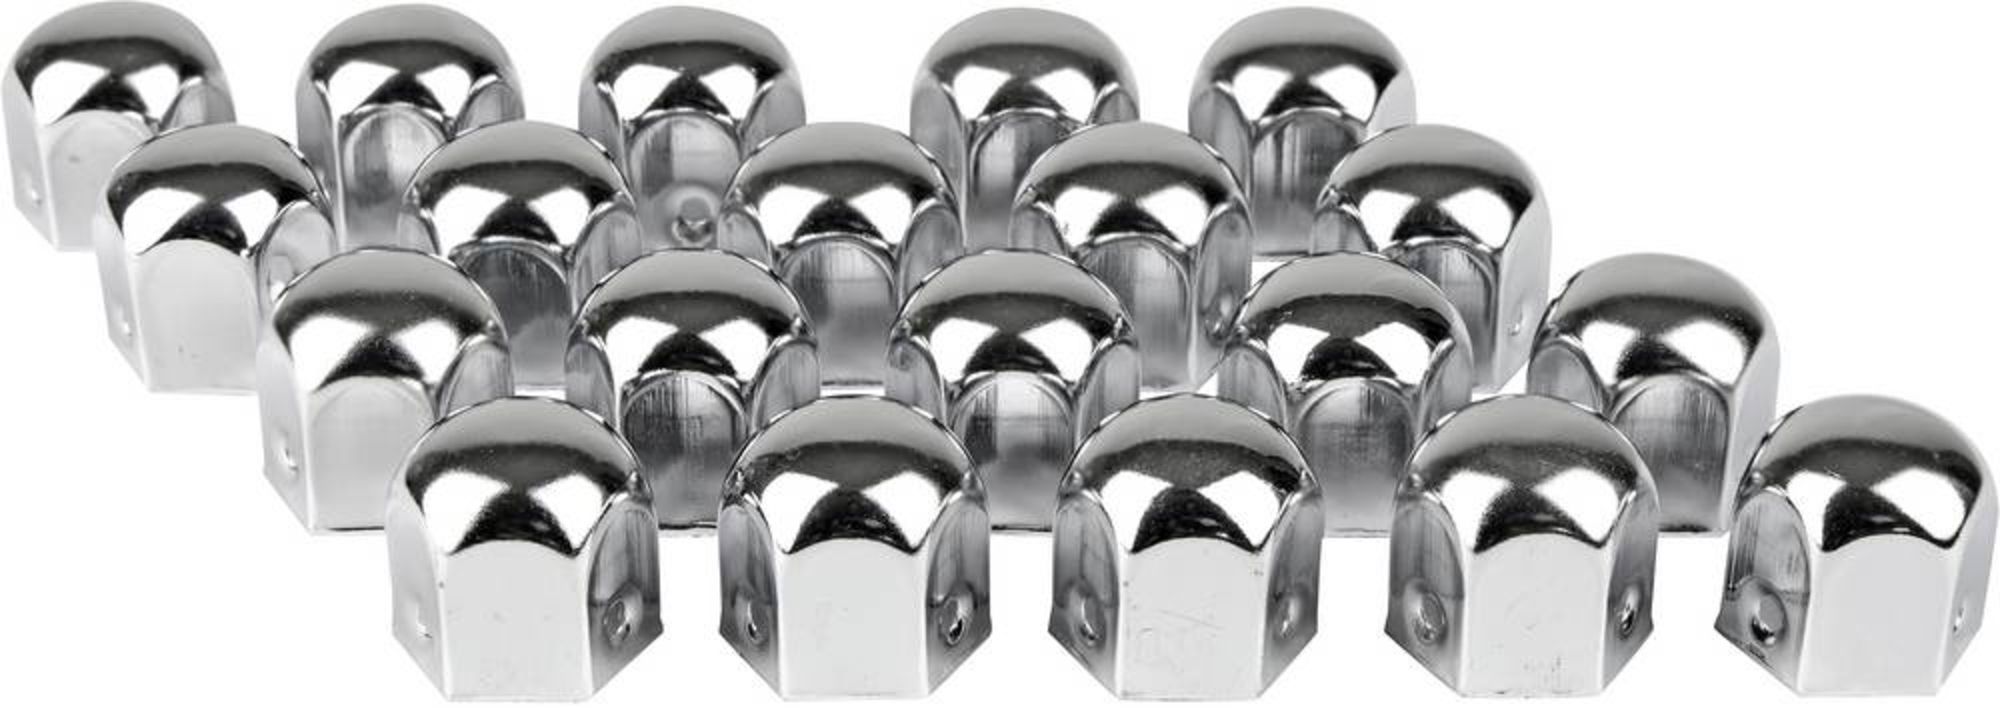 Eufab Radschraubenkappe Passend für (Schraubengröße) 19mm Chrom Metall  online bestellen